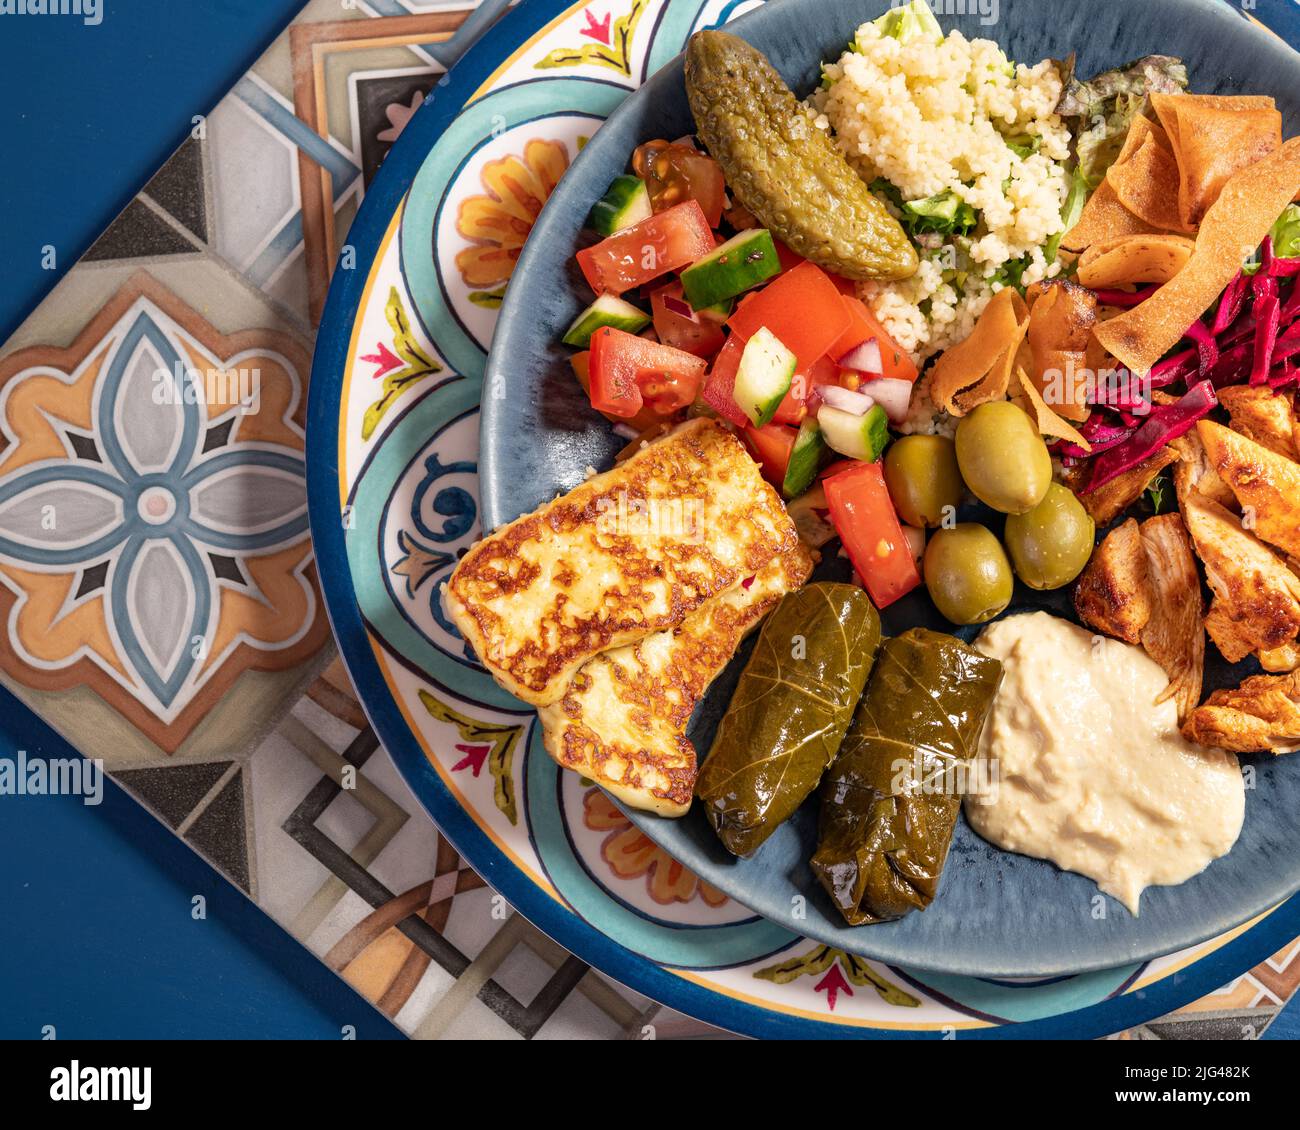 Eine Portion traditioneller östlicher mediterraner arabischer Speisen wie Hummus, Oliven, gegrilltes Huhn, Halloumi, Dolma, Couscous, Salat und pickl Stockfoto